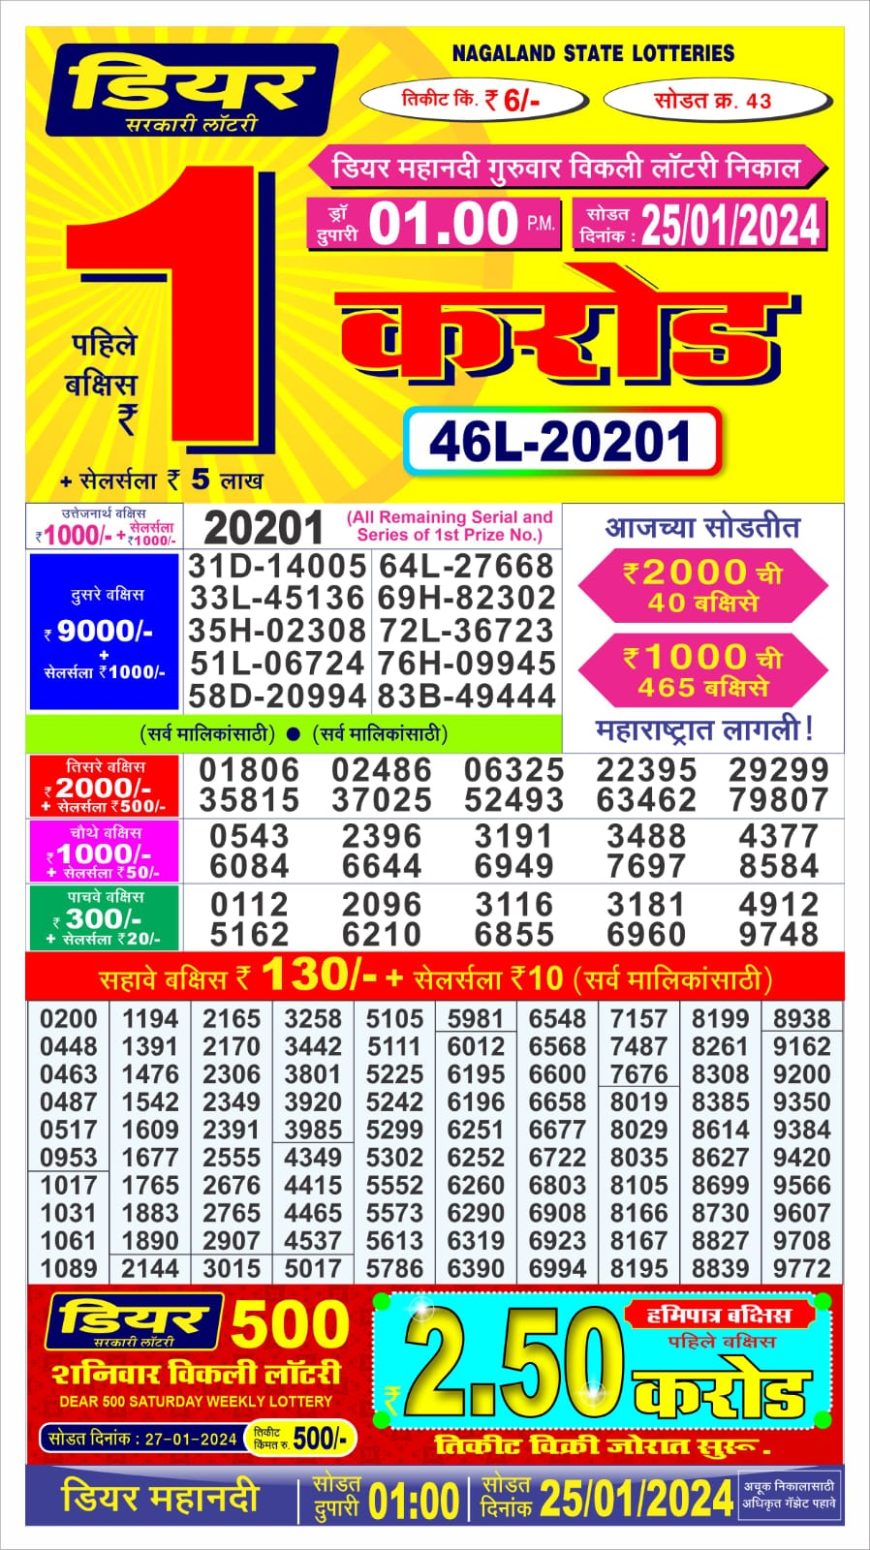 Dear Daily MAHANDI Thursday Weekly Lottery Draw 0100Pm 25 January 2024